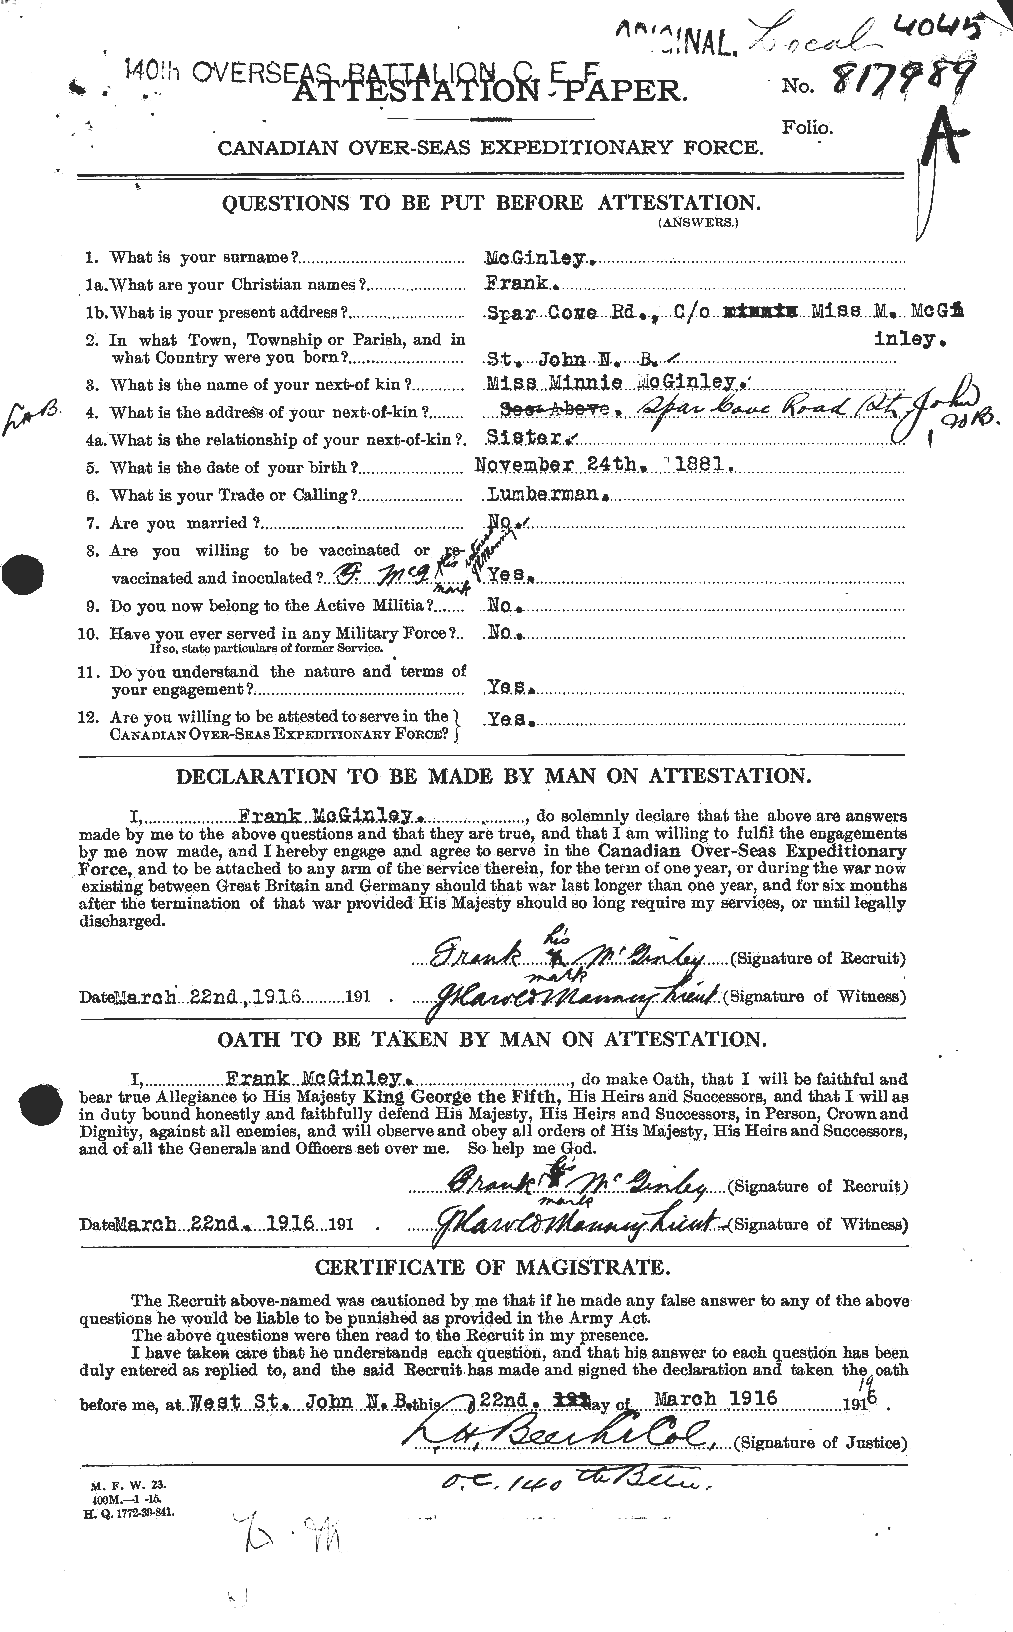 Dossiers du Personnel de la Première Guerre mondiale - CEC 526313a